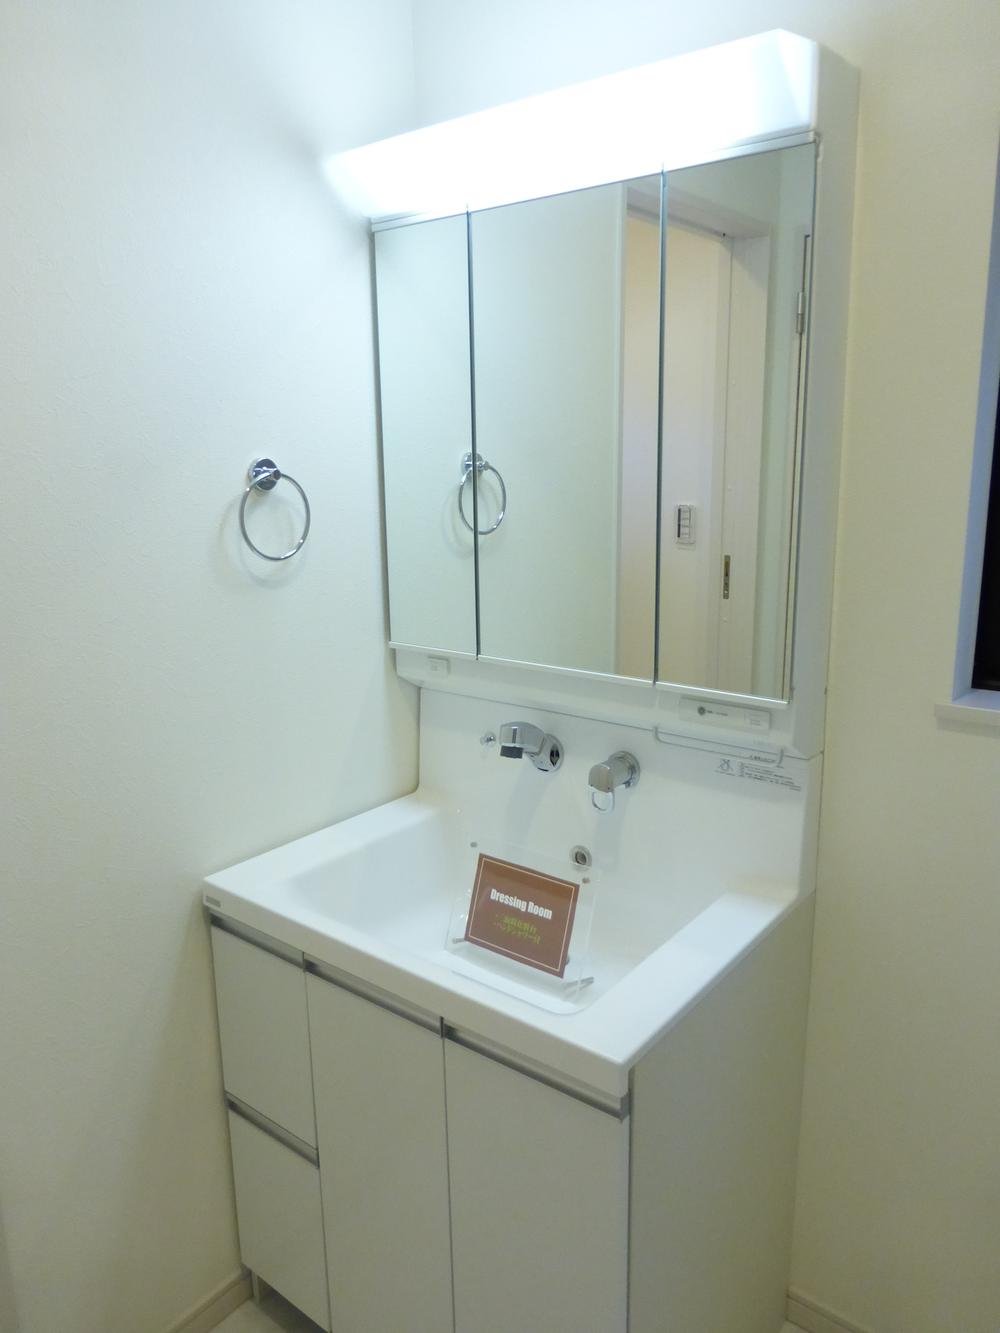 Wash basin, toilet. Indoor (December 15, 2013) Shooting Vanity with hand shower